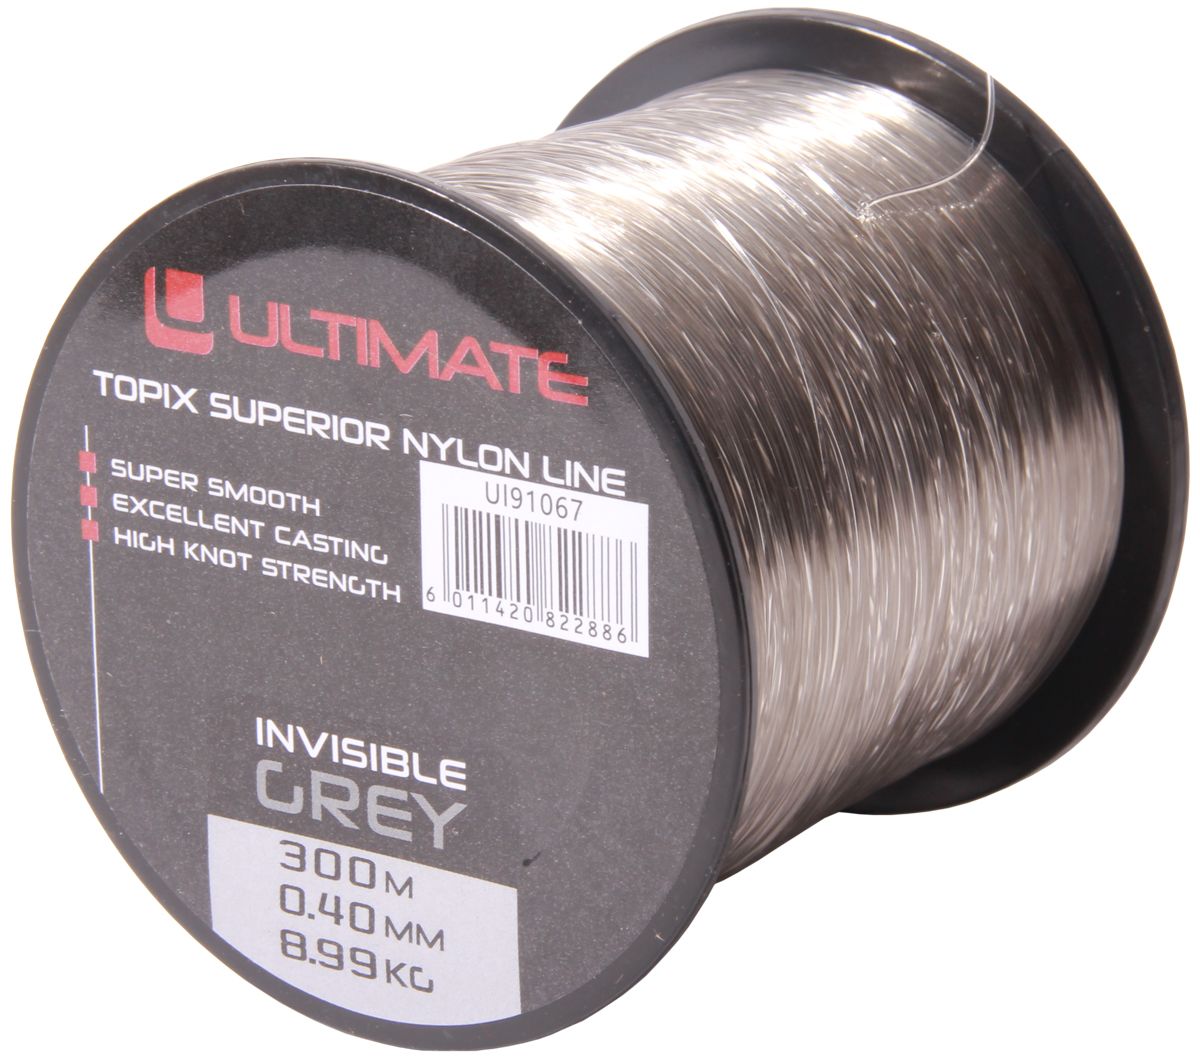 Ultimate Topix Nylon Invisible Grey, 300m